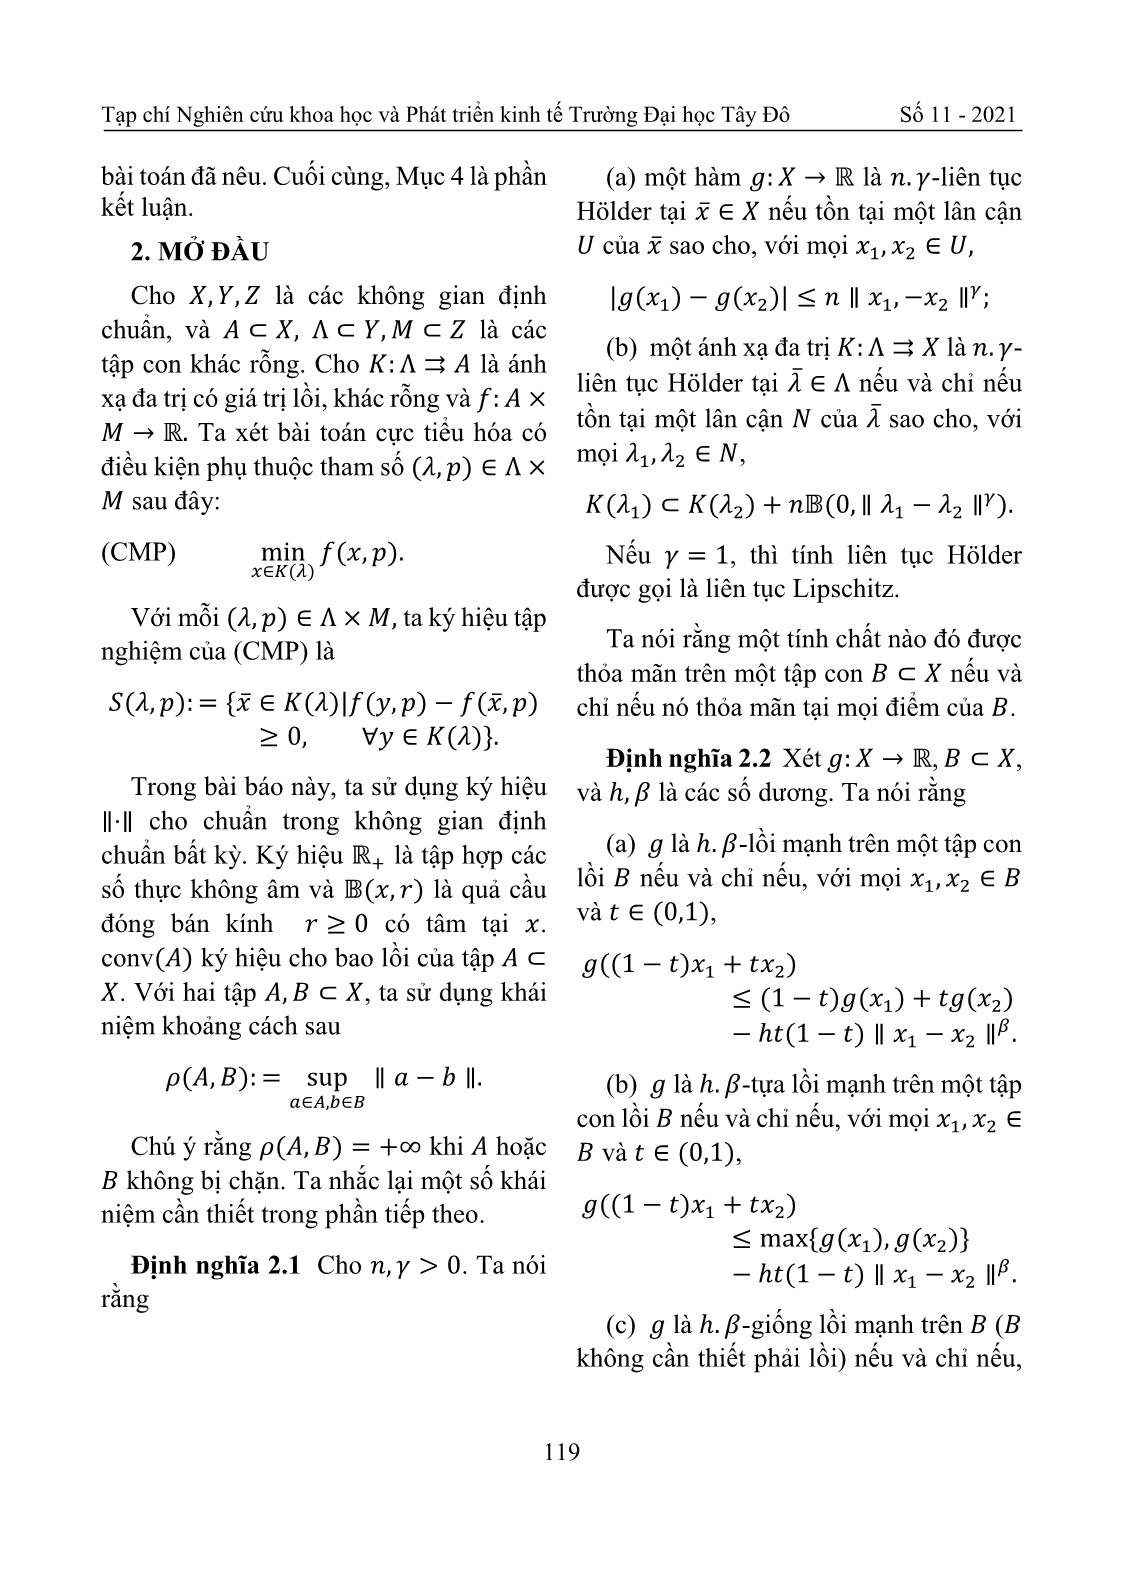 Tính liên tục Holder của ánh xạ nghiệm bài toán cực tiểu hóa có điều kiện trang 3